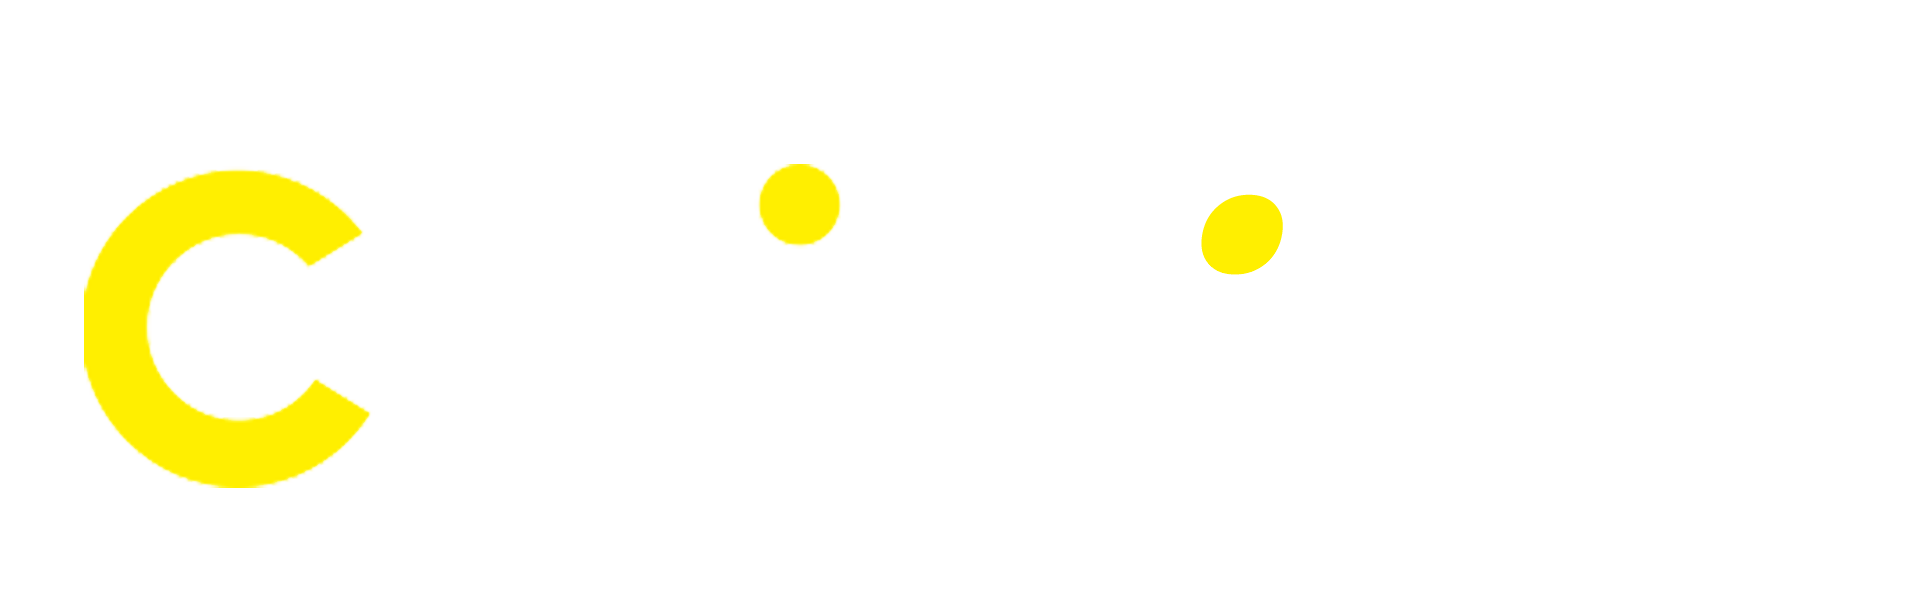 Logo Cwin